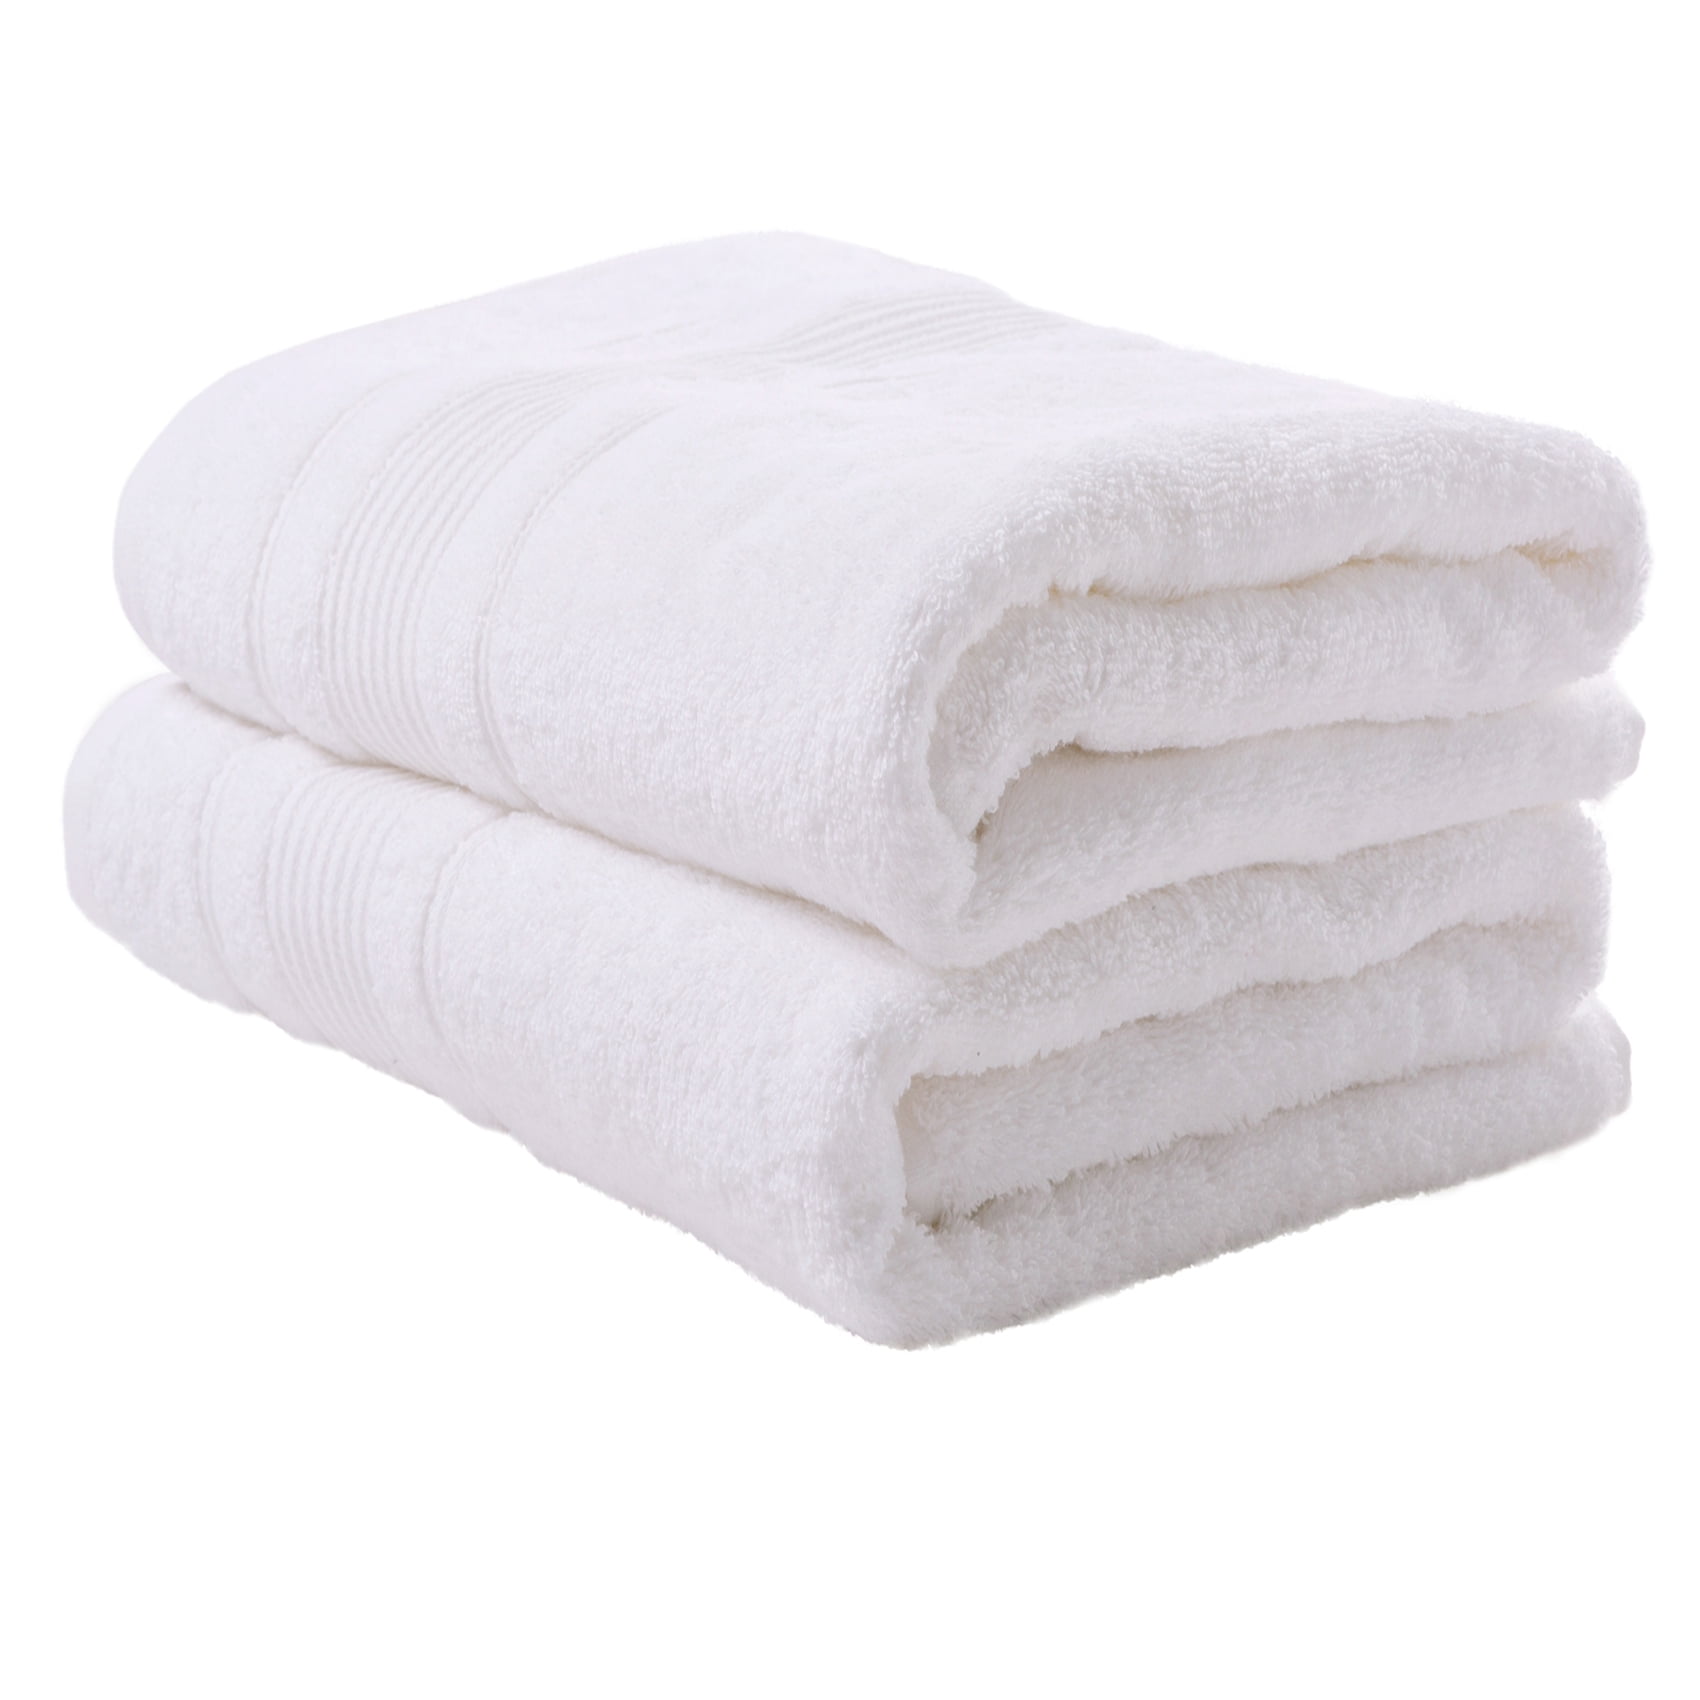 2-Piece Bath Towels Set for Bathroom, Spa \u0026 Hotel Quality | 100% Cotton ...